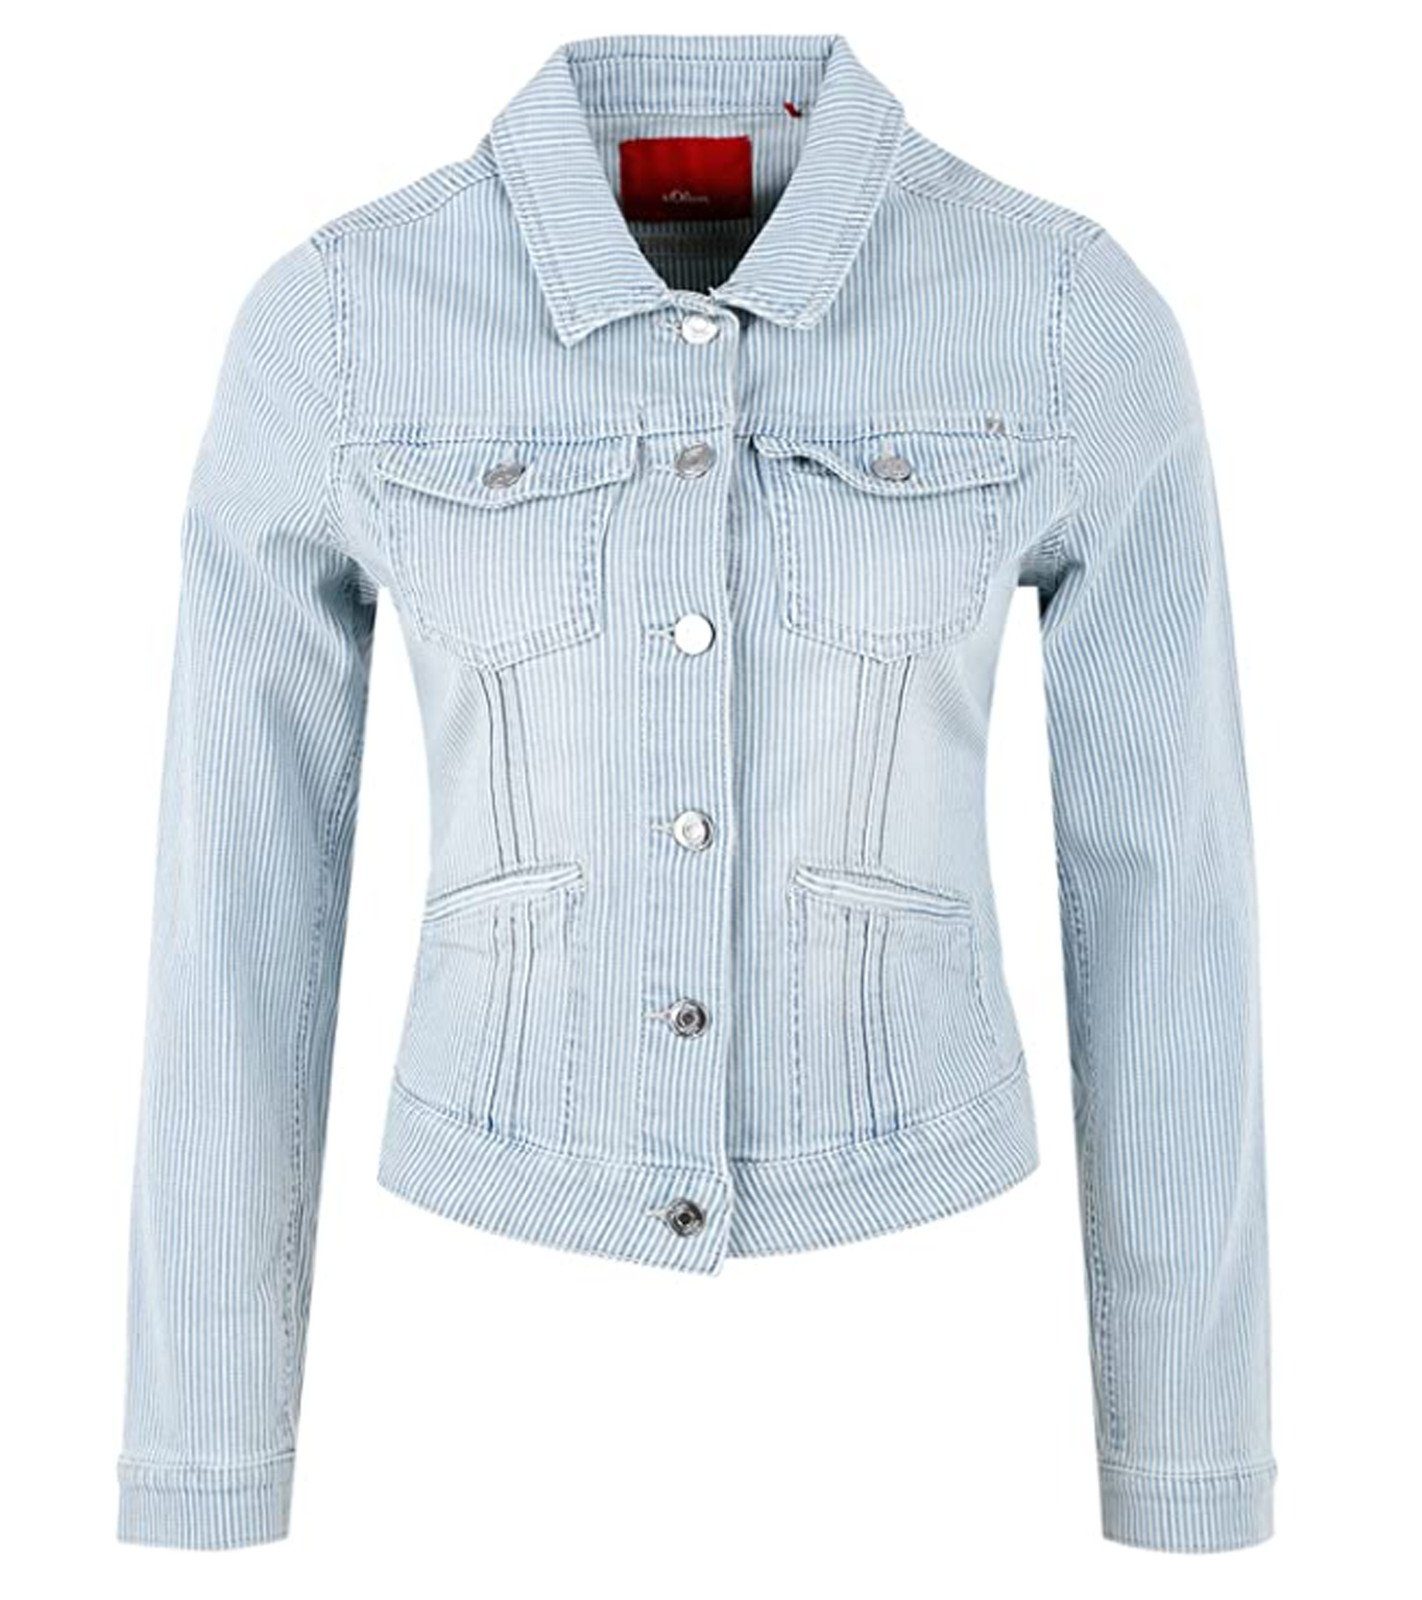 Frühlings-Jacke s.Oliver Damen mit angesagte Streifenmuster s.Oliver Jeans-Jacke Blau/Weiß Jeansjacke Freizeit-Jacke